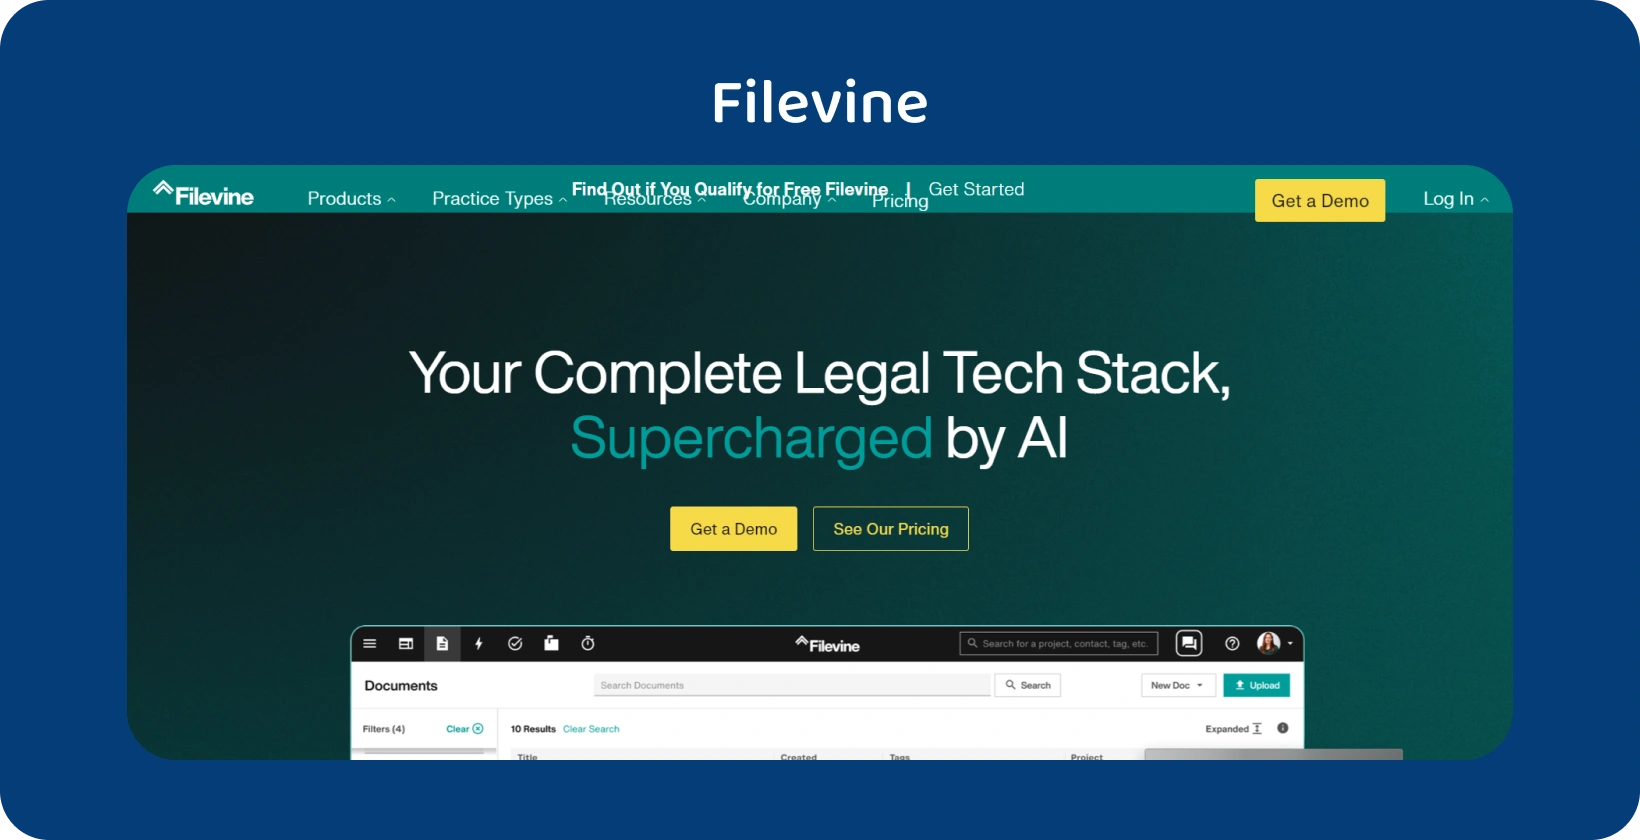 बेहतर रिकॉर्ड प्रबंधन, दक्षता और संगठन को बढ़ावा देने के लिए Filevine की AI-संचालित कानूनी तकनीक की खोज करें।